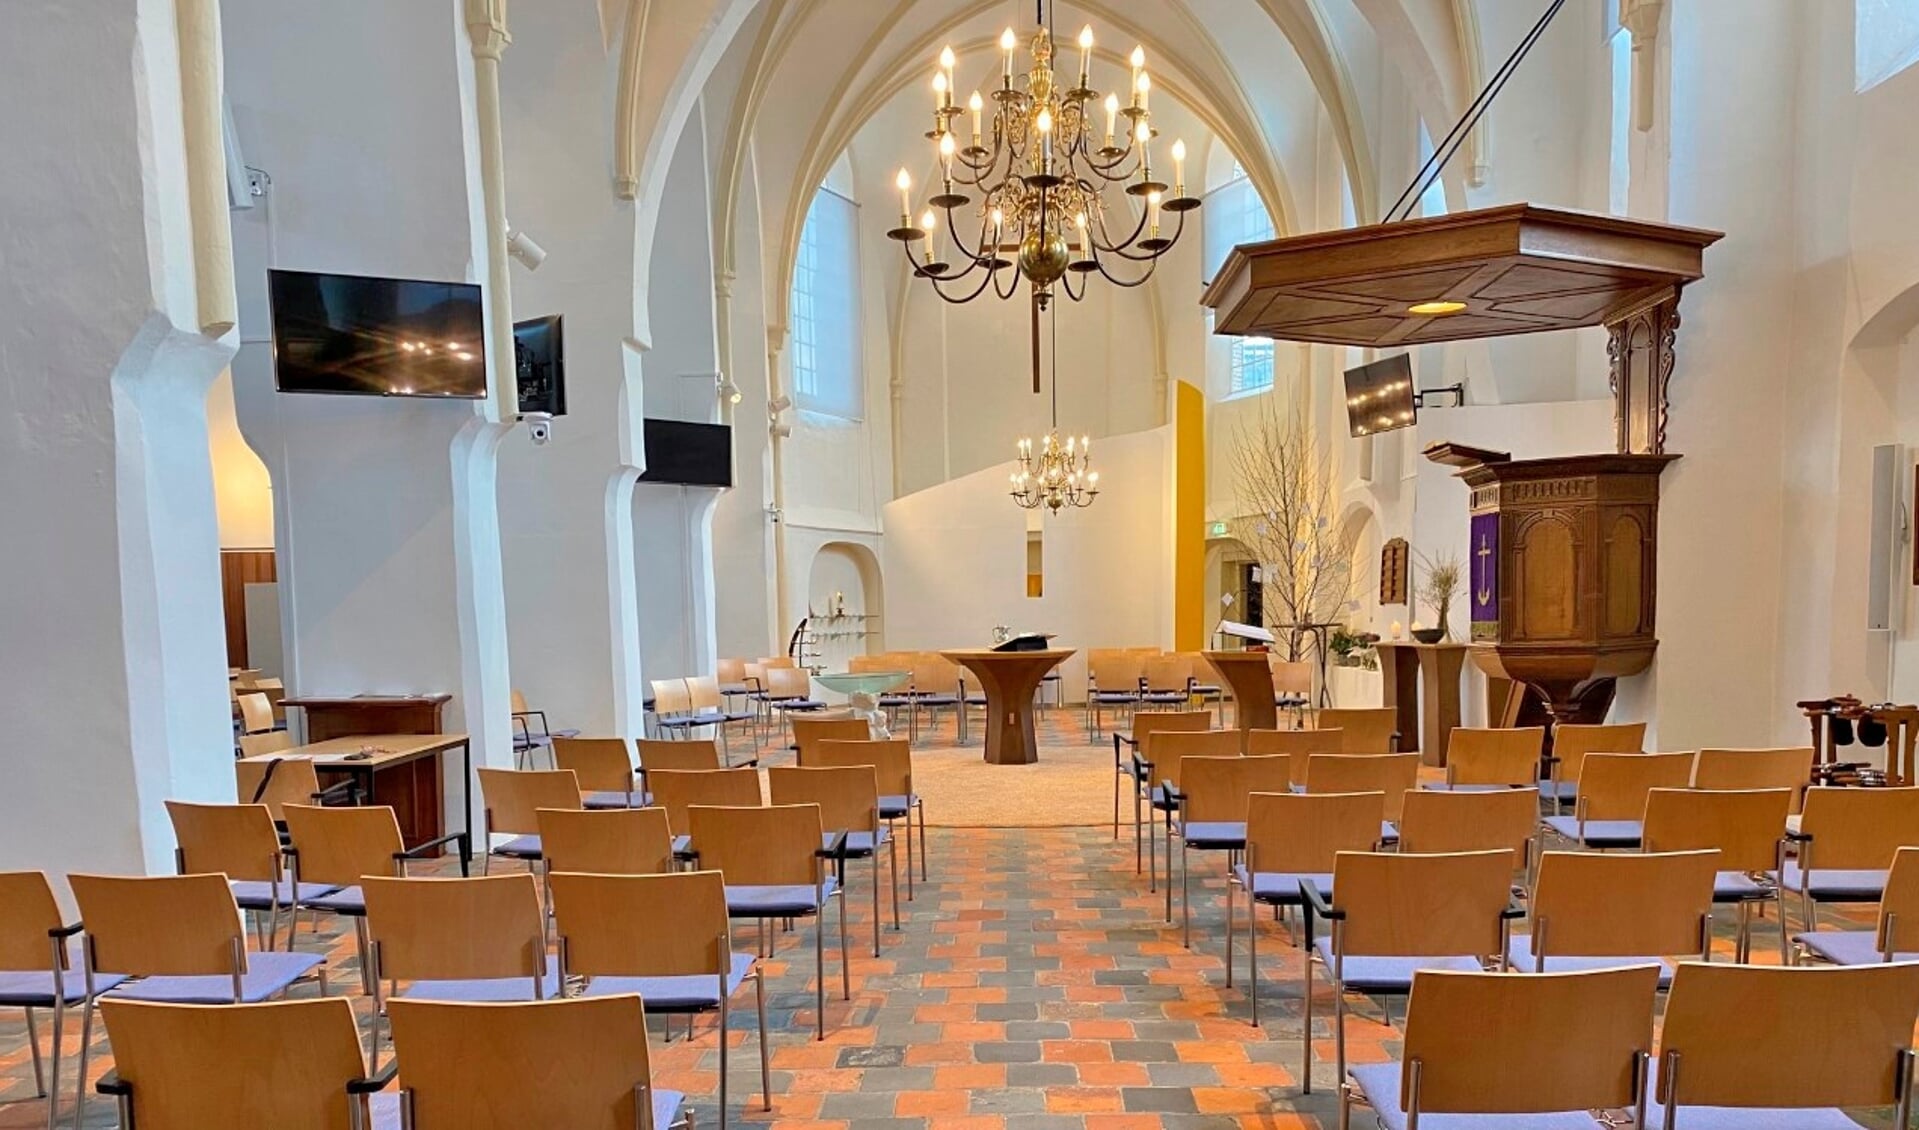 De kerkzaal wordt in augustus expositieruimte. Foto: PR